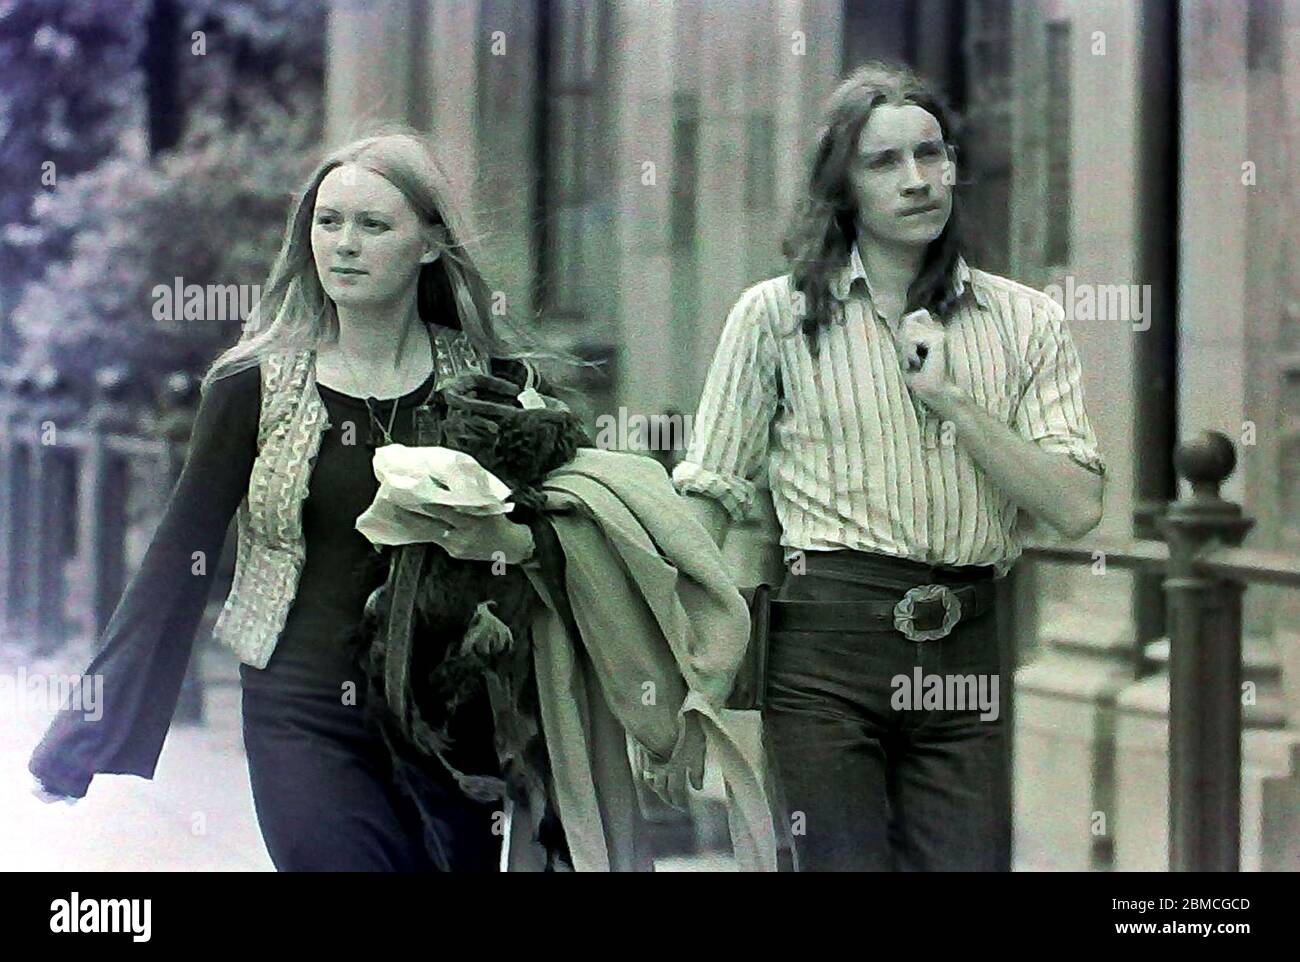 Ein junger Mann und eine junge Frau, die beide lange Haare haben, gehen 1974 in Manchester, England, Großbritannien, entlang einer Straße. Stockfoto